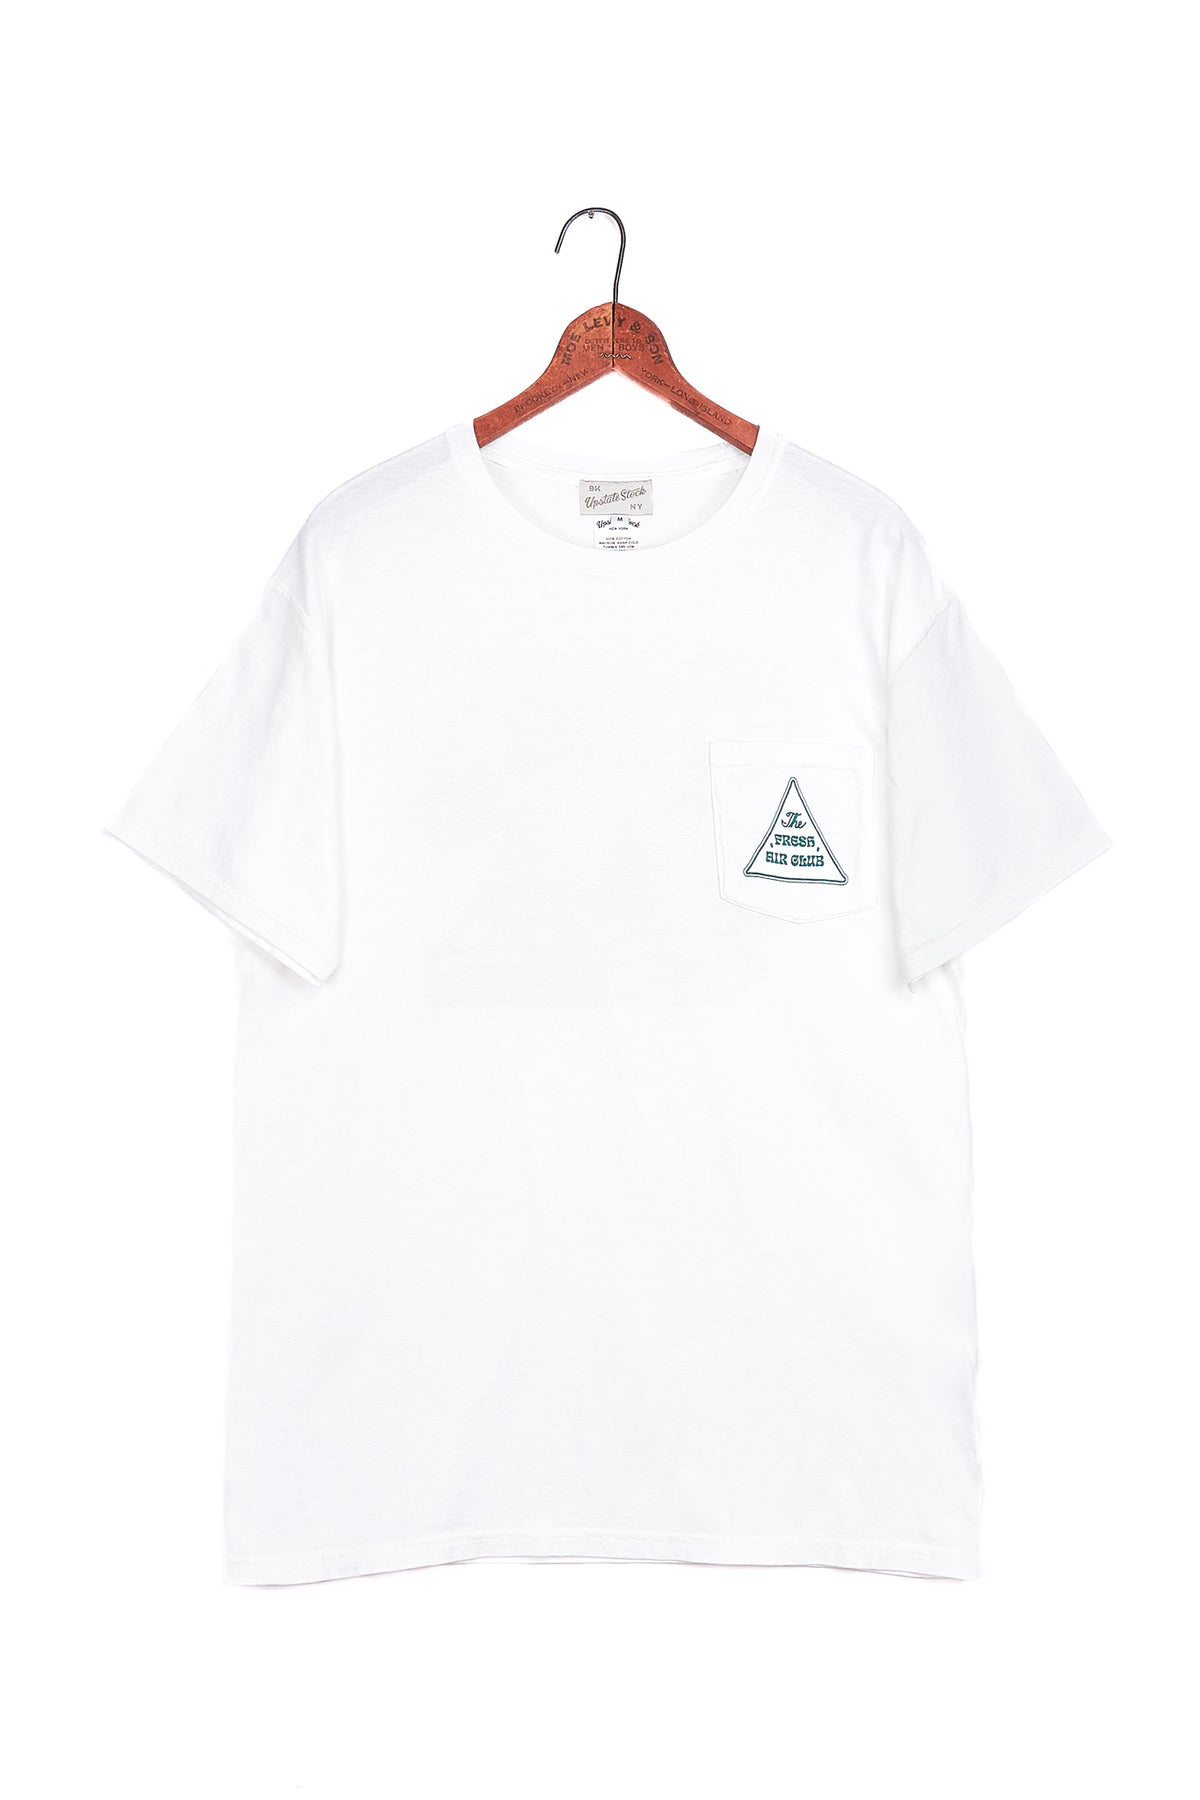 The American Cotton Pocket Tshirt - FRESH AIR CLUB